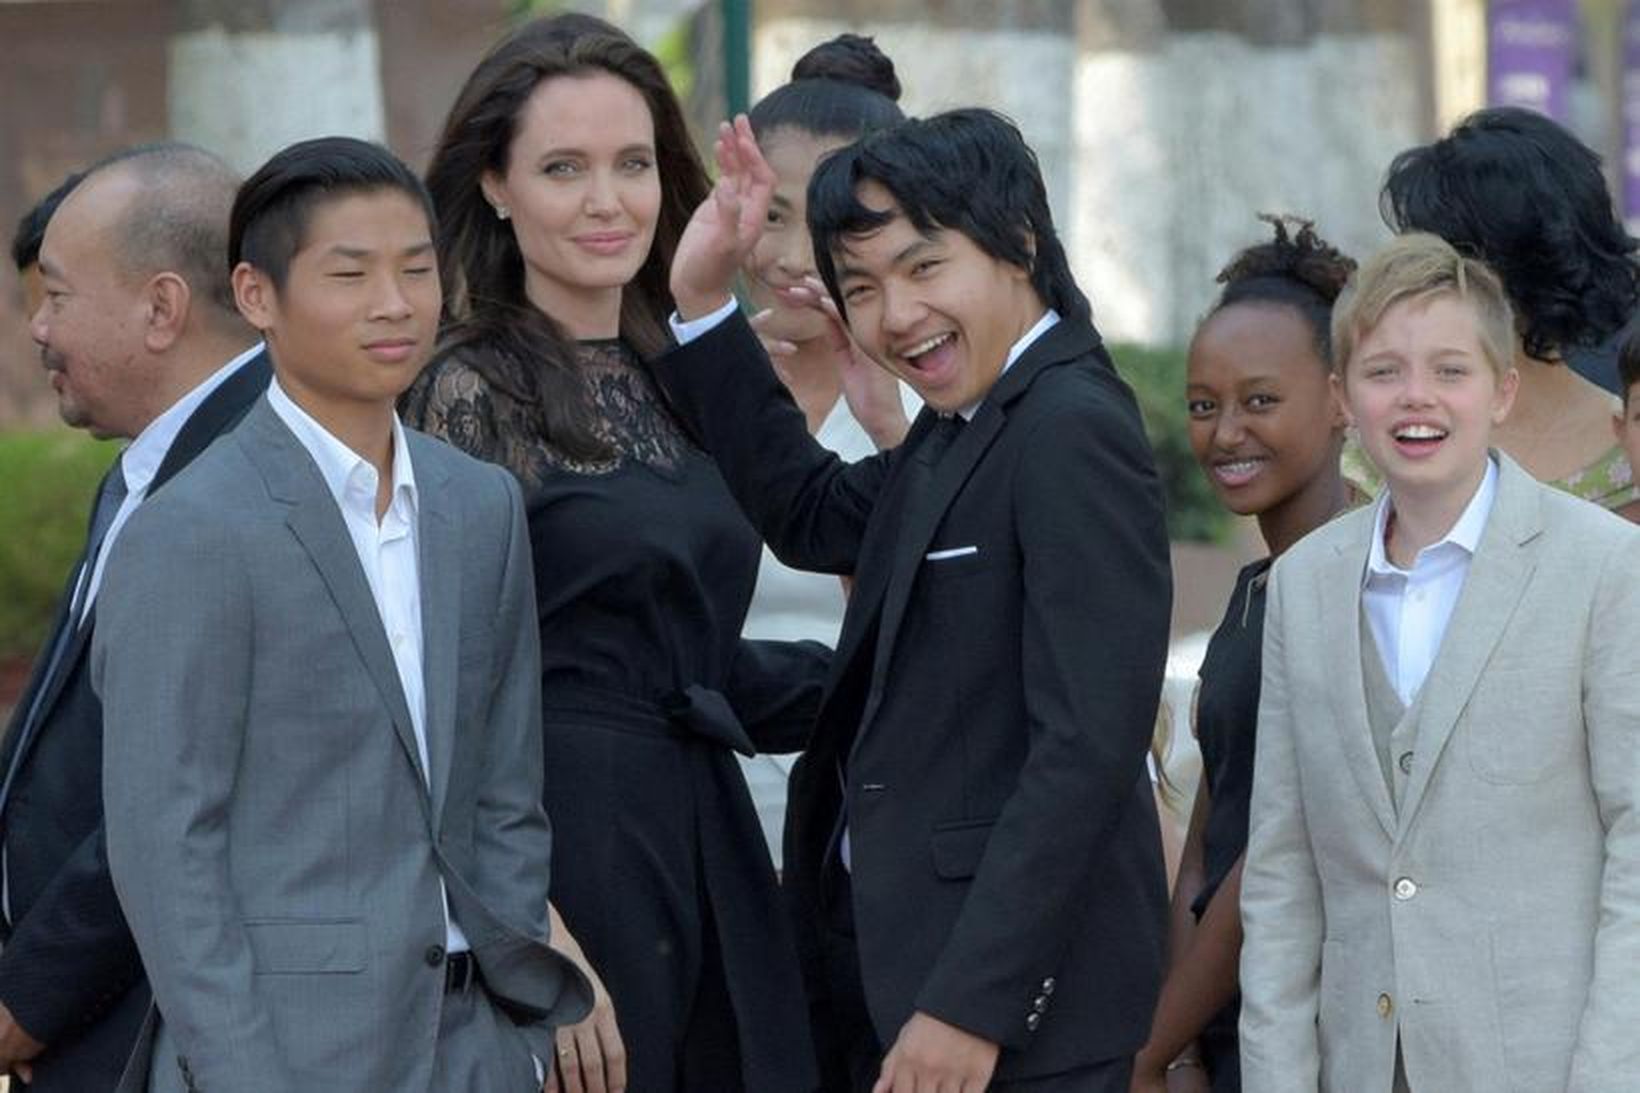 Angelina Jolie ásamt börnum sínum í heimsókninni til Kambódíu.